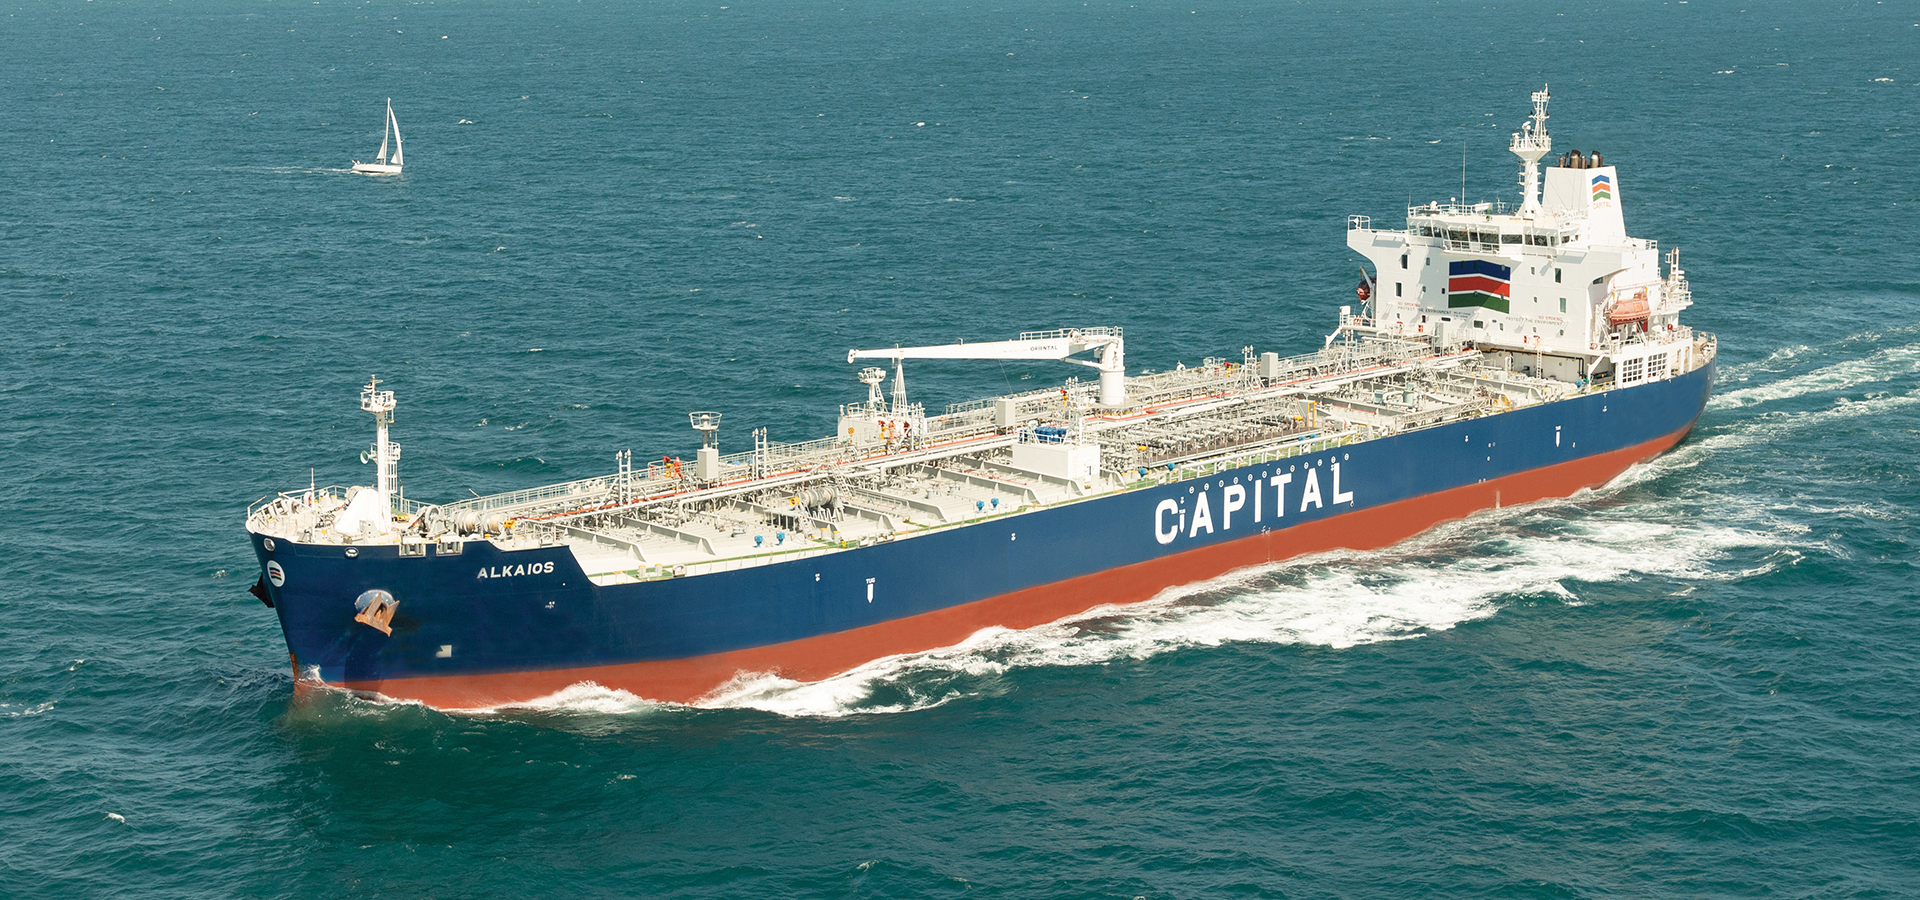 Ο ναυτικός θεμελιώδης πυλώνας της ναυτιλιακής βιομηχανίας για την Capital Maritime